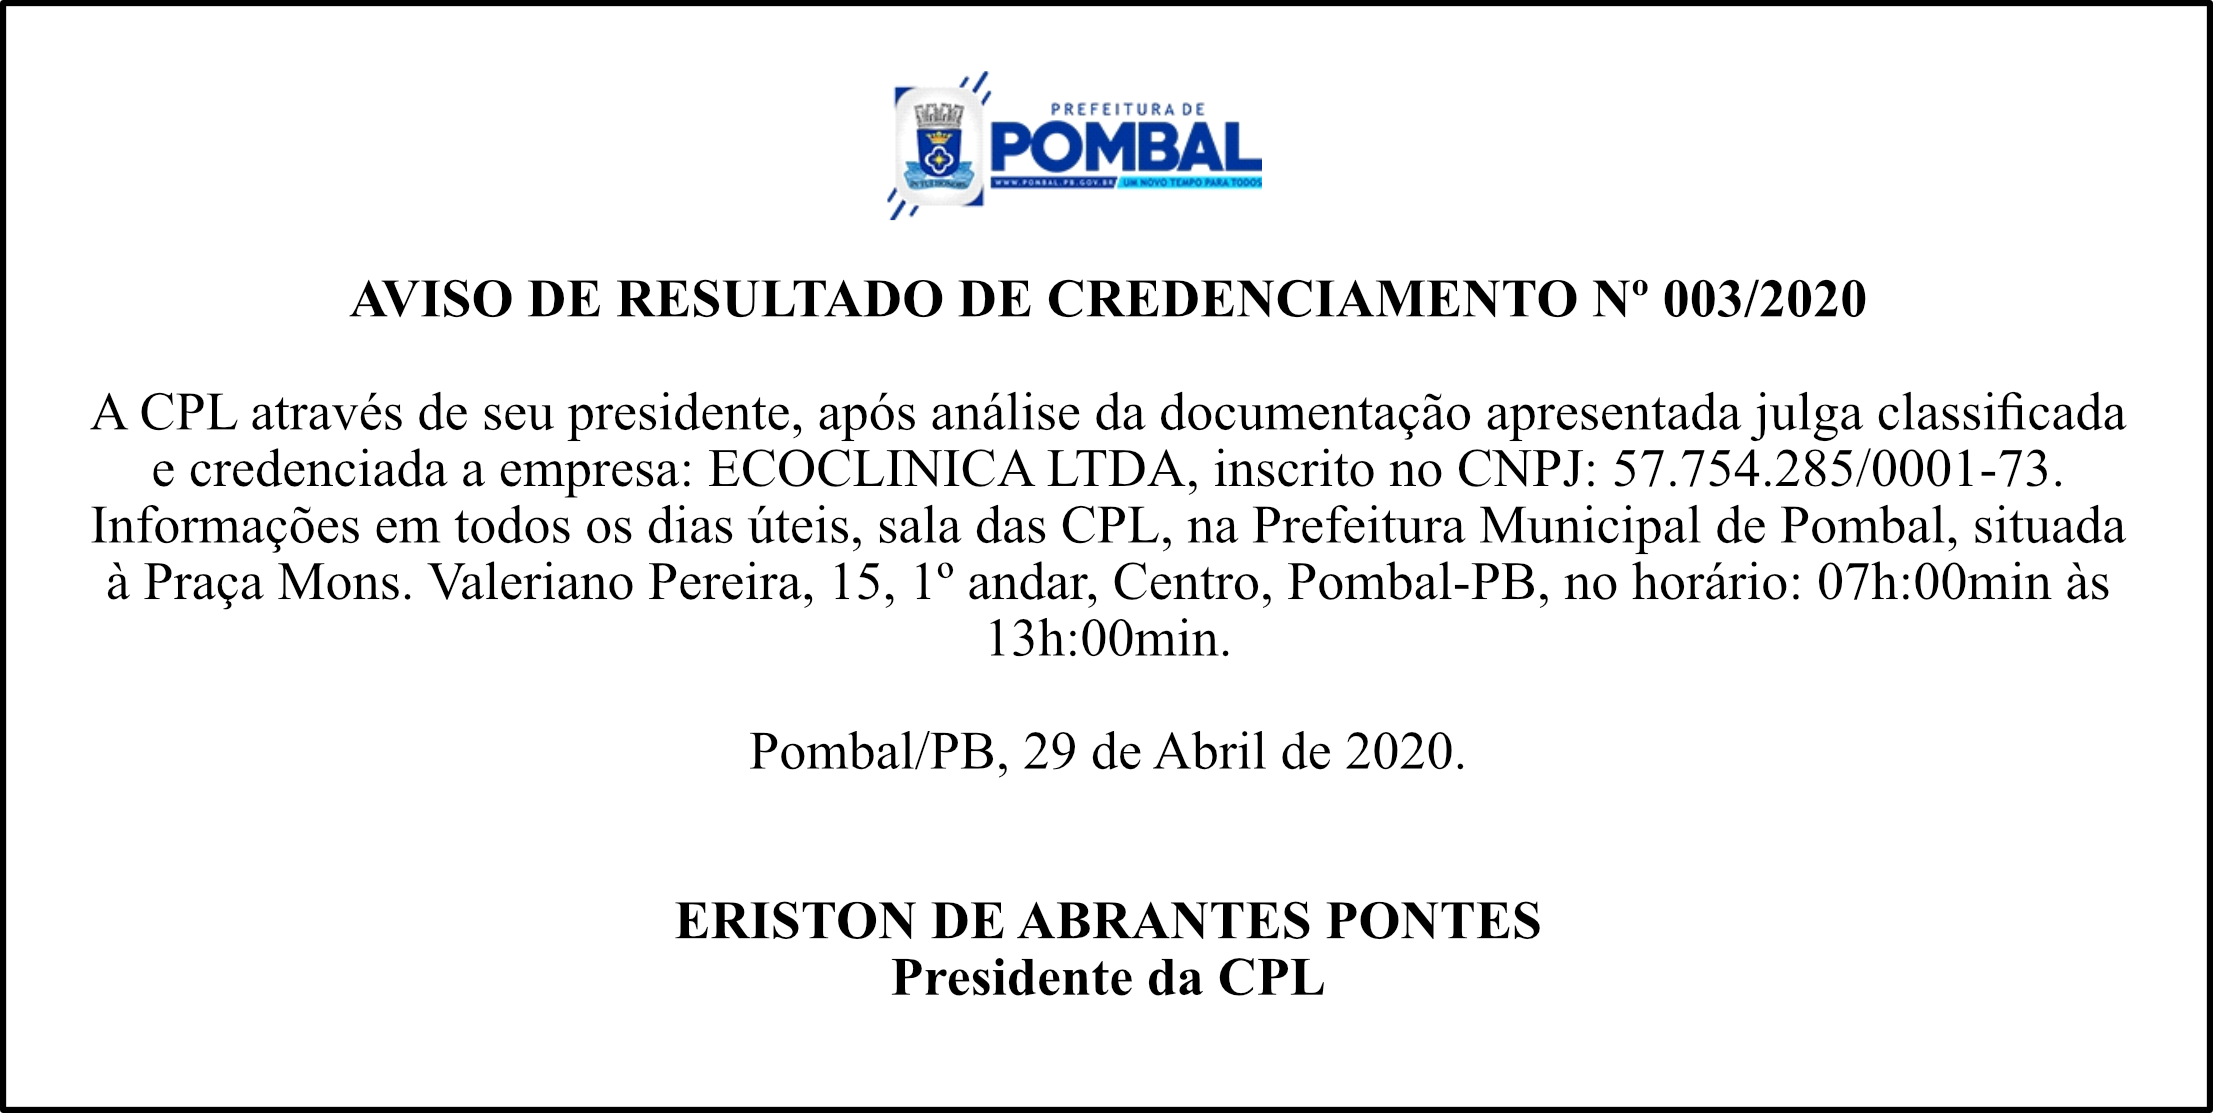 PREFEITURA MUNICIPAL DE POMBAL – AVISO DE RESULTADO DE CREDENCIAMENTO Nº 003/2020